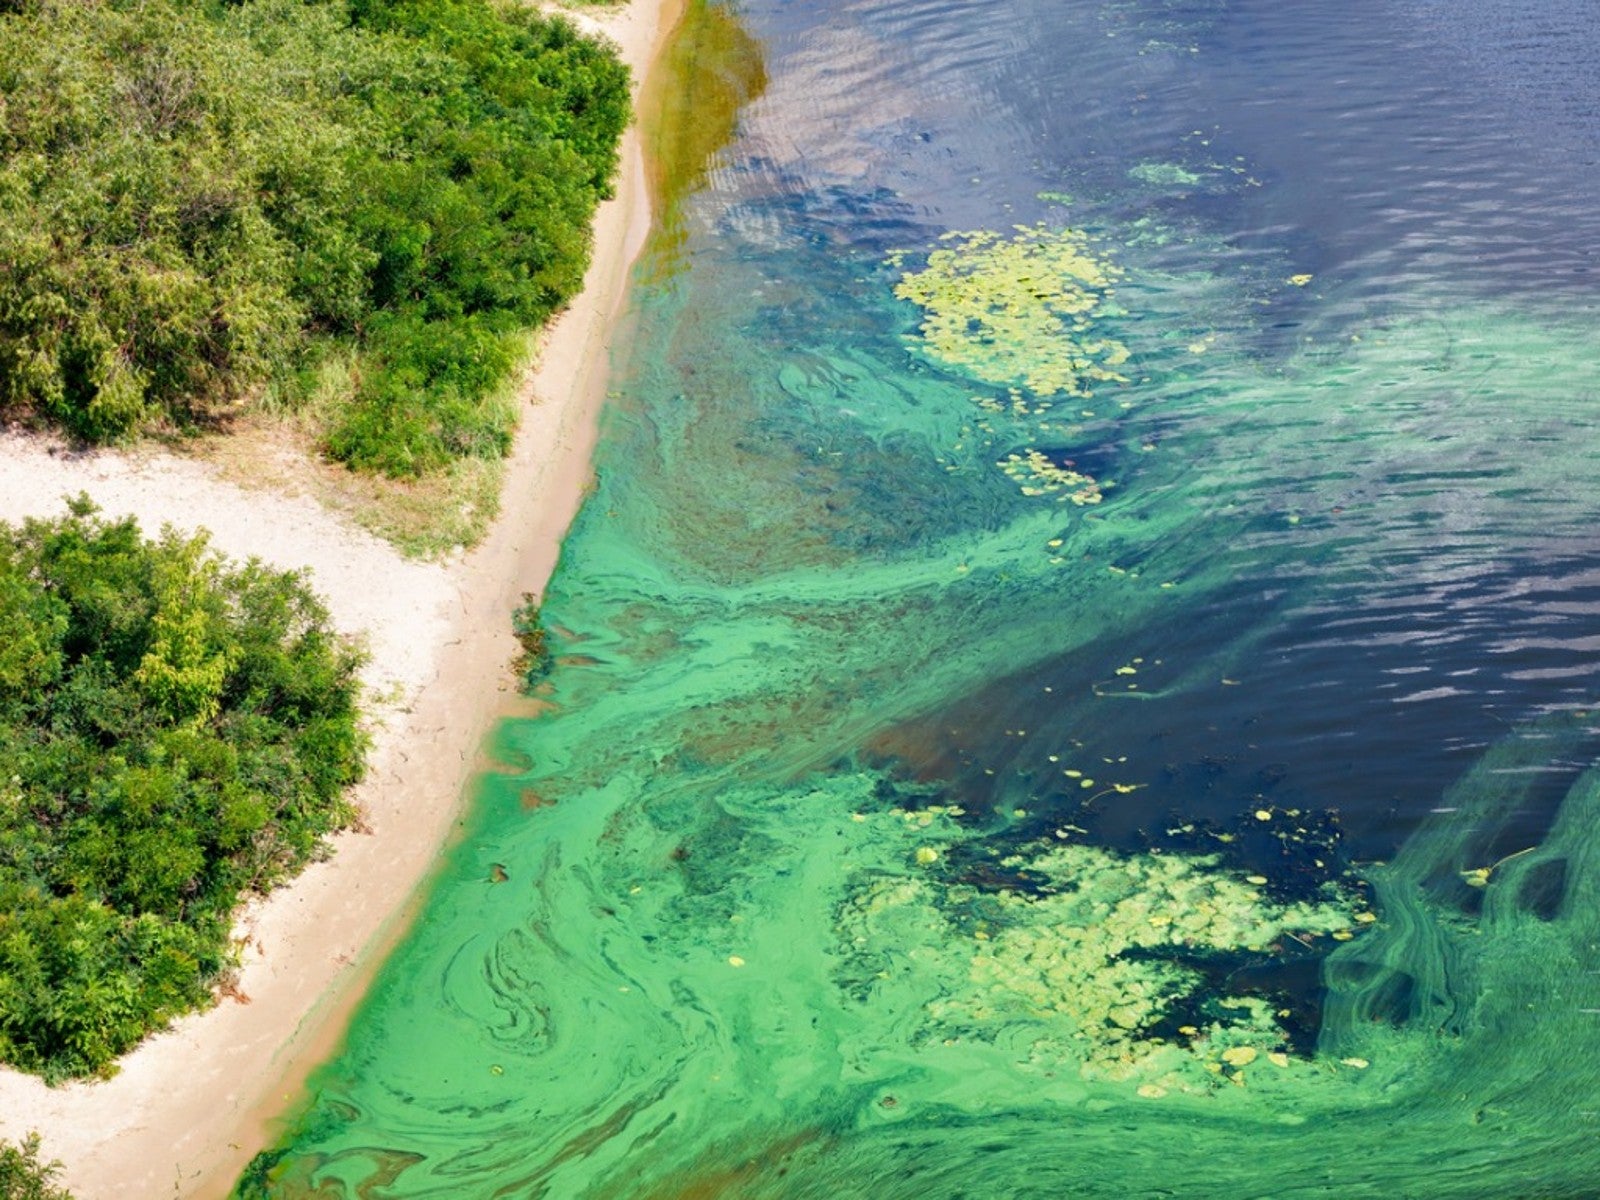 algae bloom off the coast